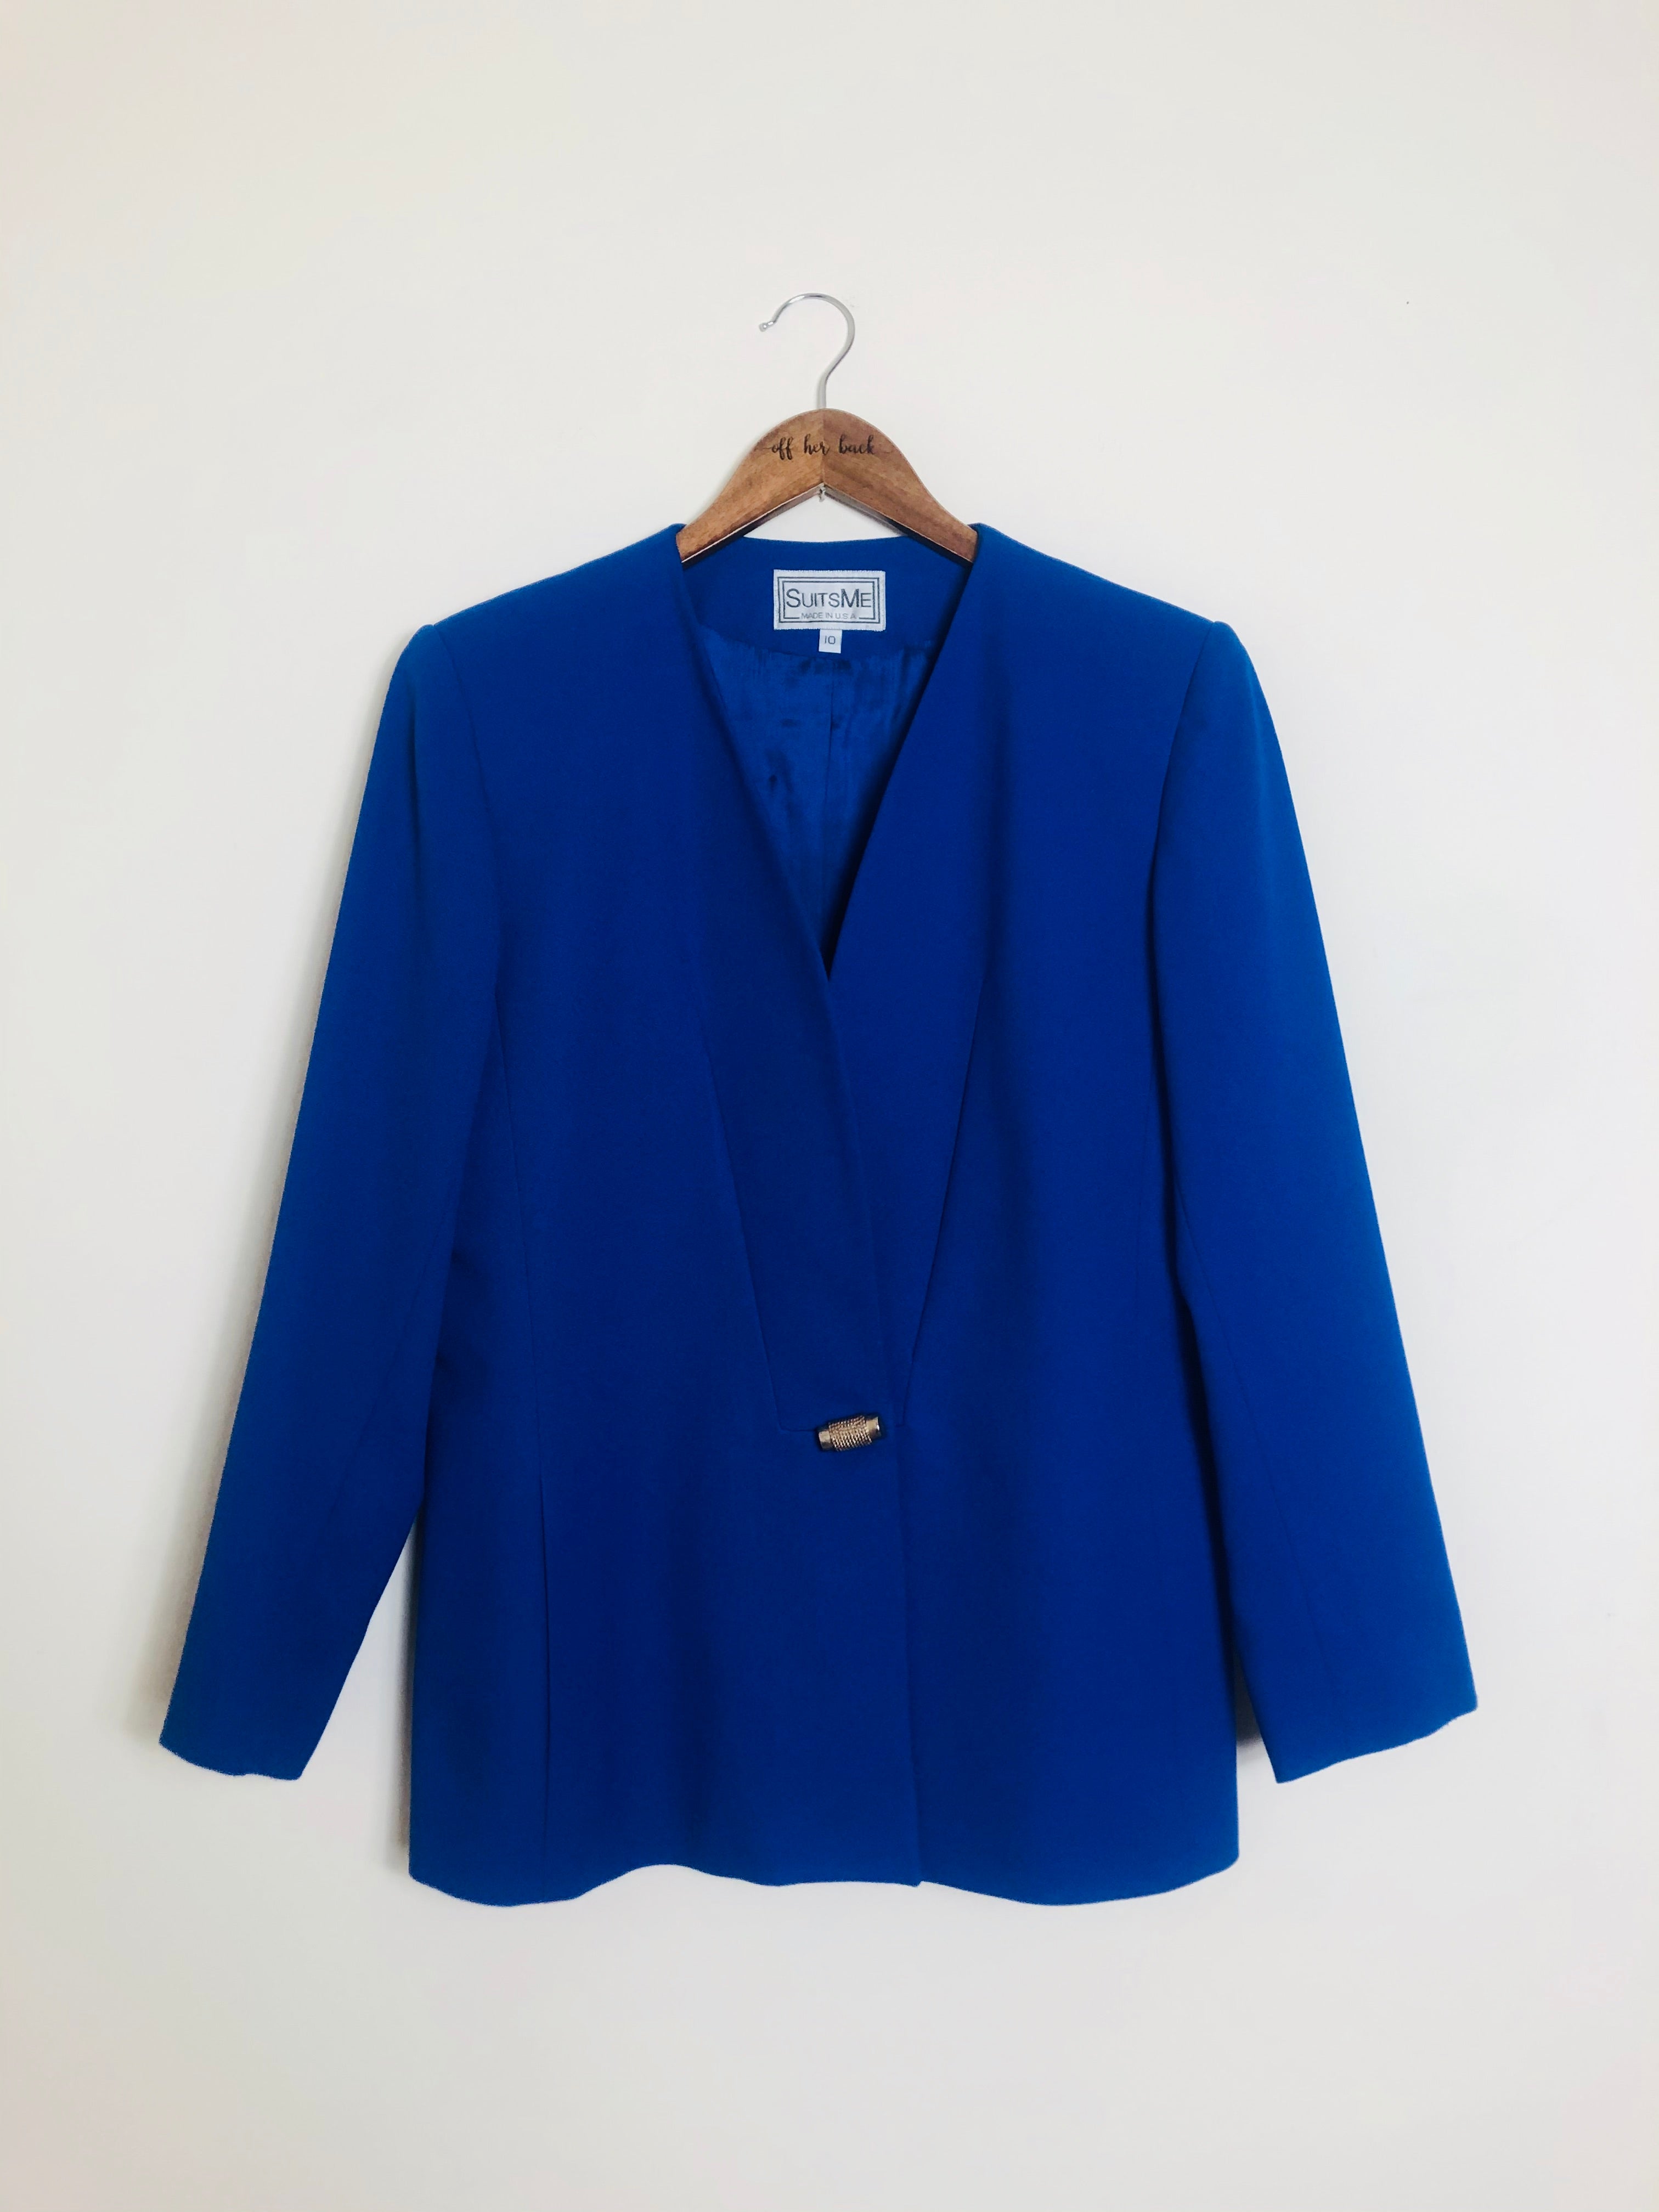 True Blue Vintage Blazer-Size: 10